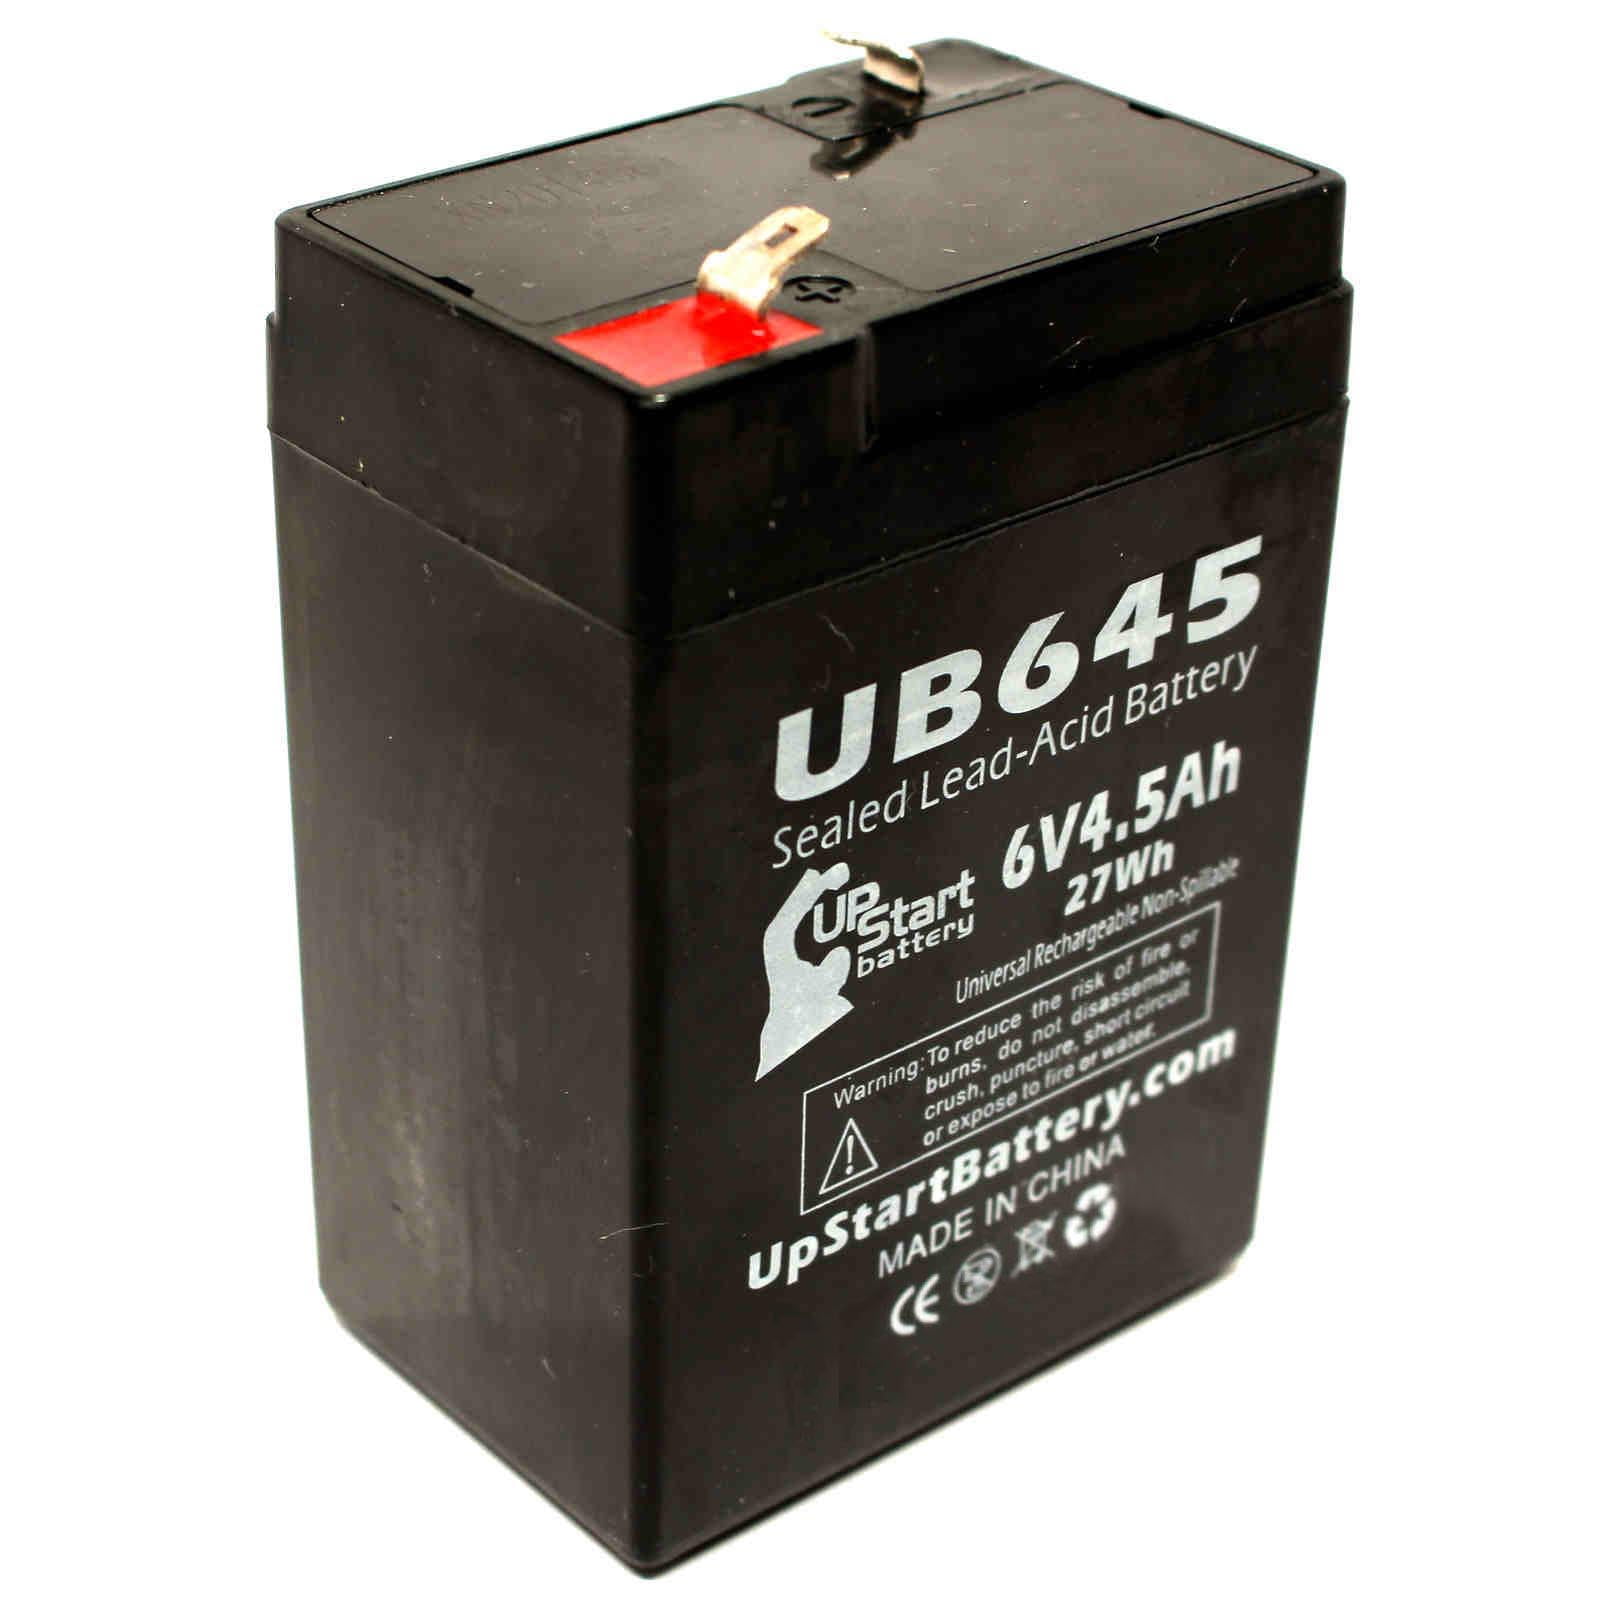 Acid batteries. Батарея Sealed lead-acid Rechargeable 4v. Sealed Rechargeable lead-acid Battery 6v. Аккумулятор Sealed lead-acid Battery. Lead acid аккумулятор 4v.